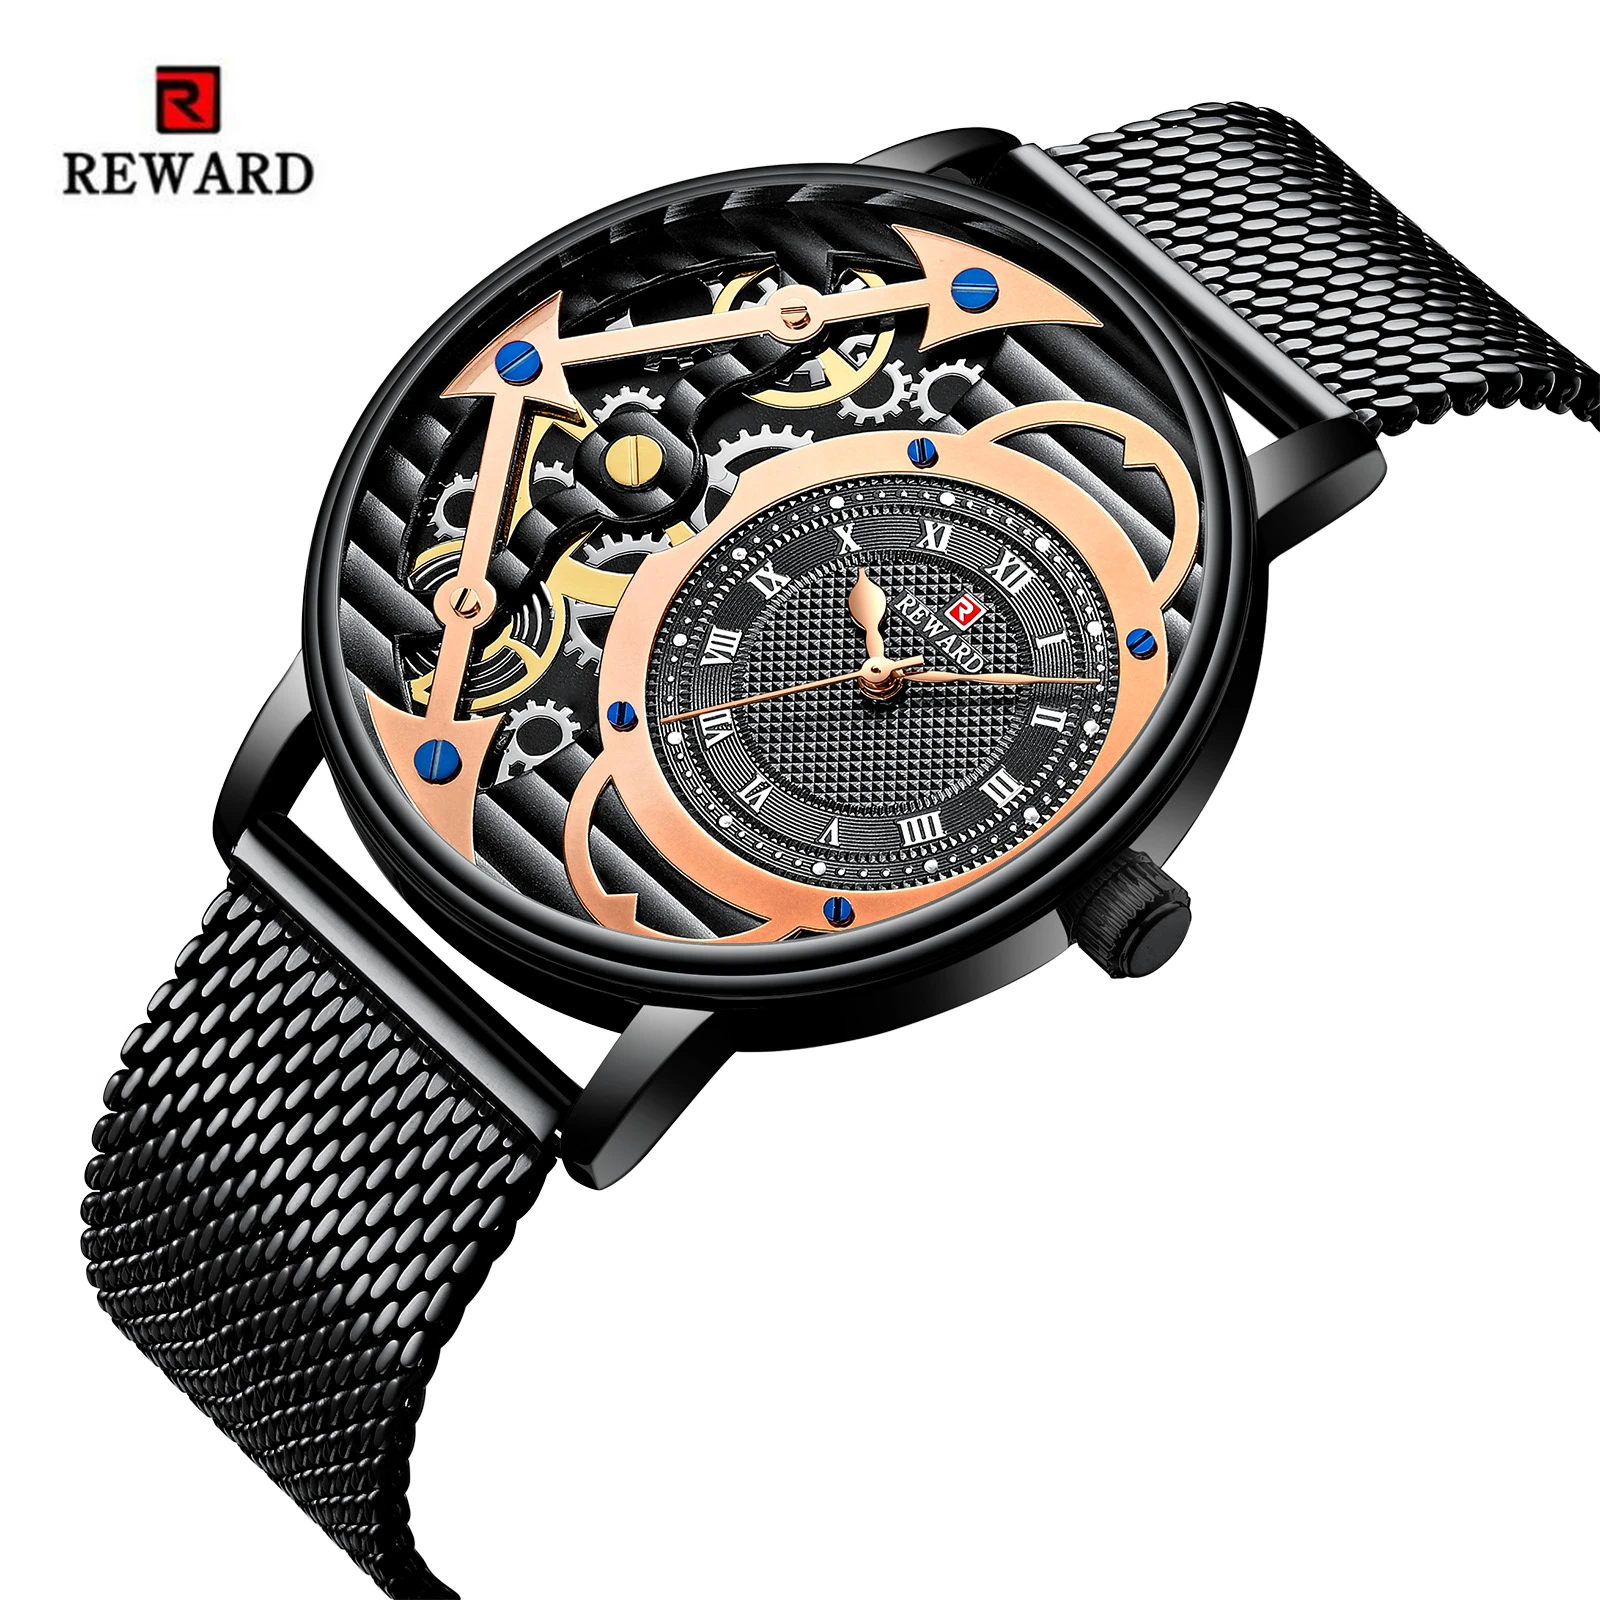 

REWARD Top Luxury Brand Men's Watch Fashion Skeleton Watch Men Watch Waterproof Stainless Steel Male Clock Relogio Masculino